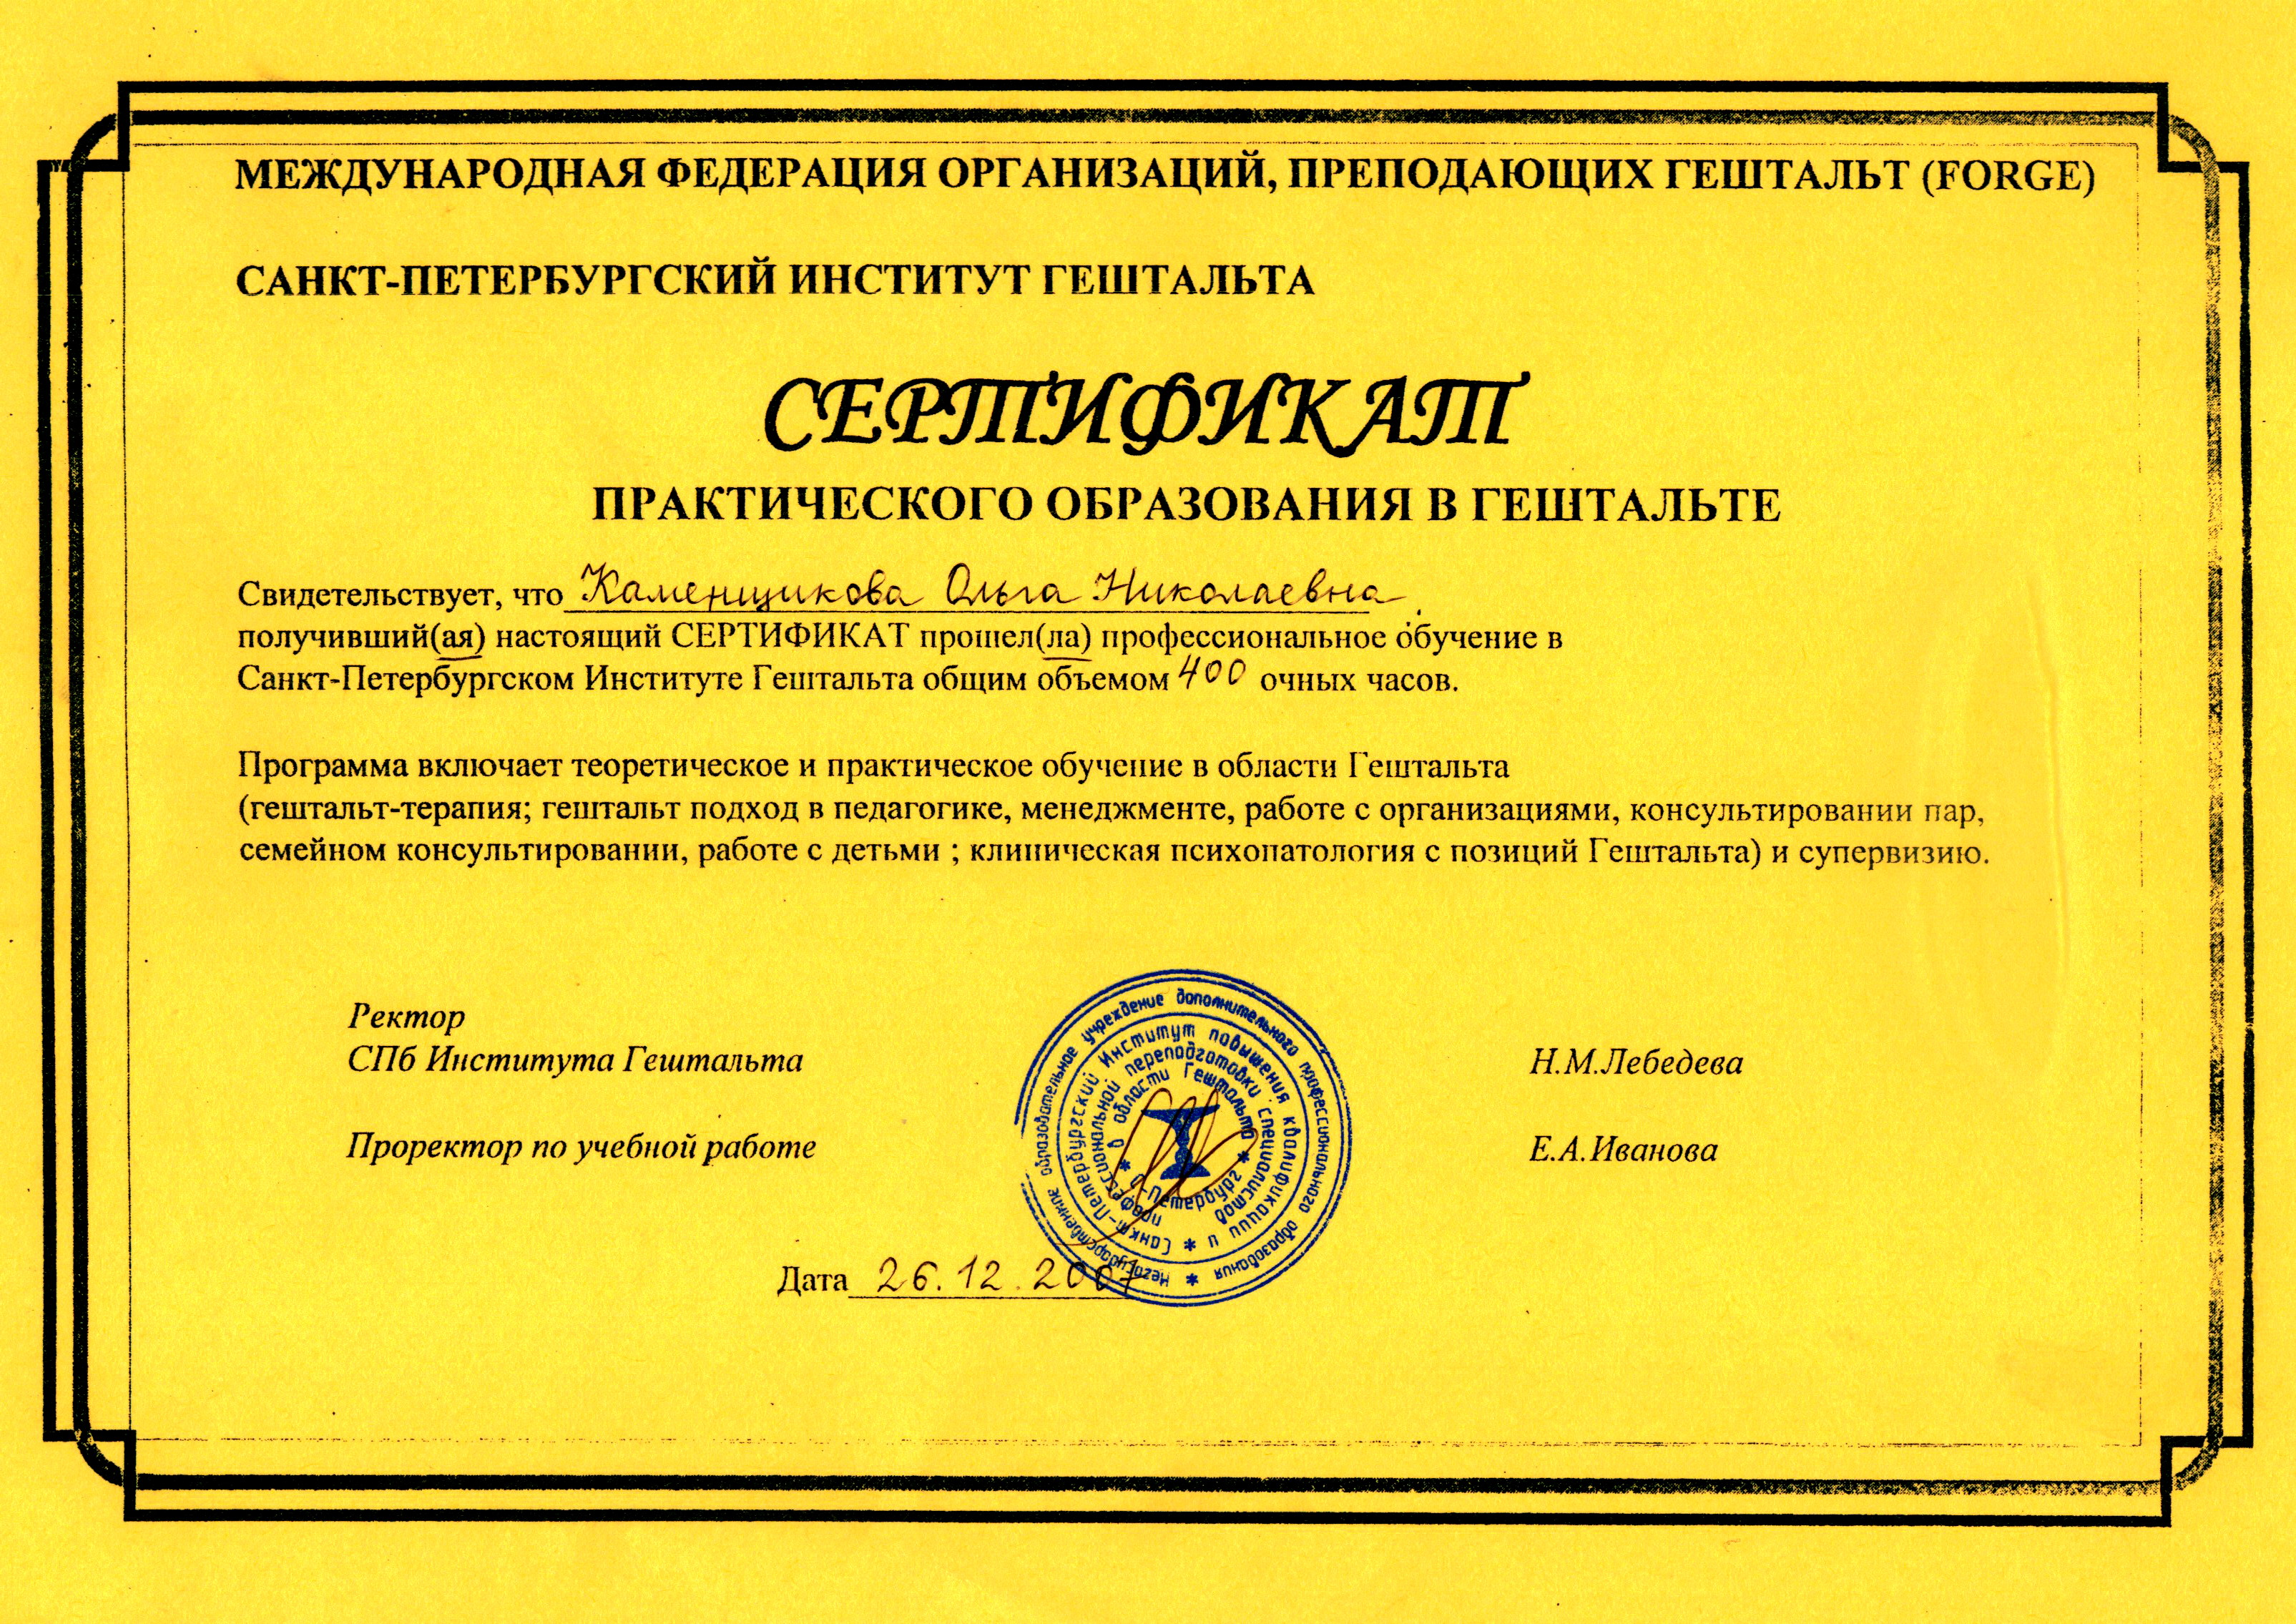 Сертификат практического образования в гештальте Санкт-Петербургского института гештальта